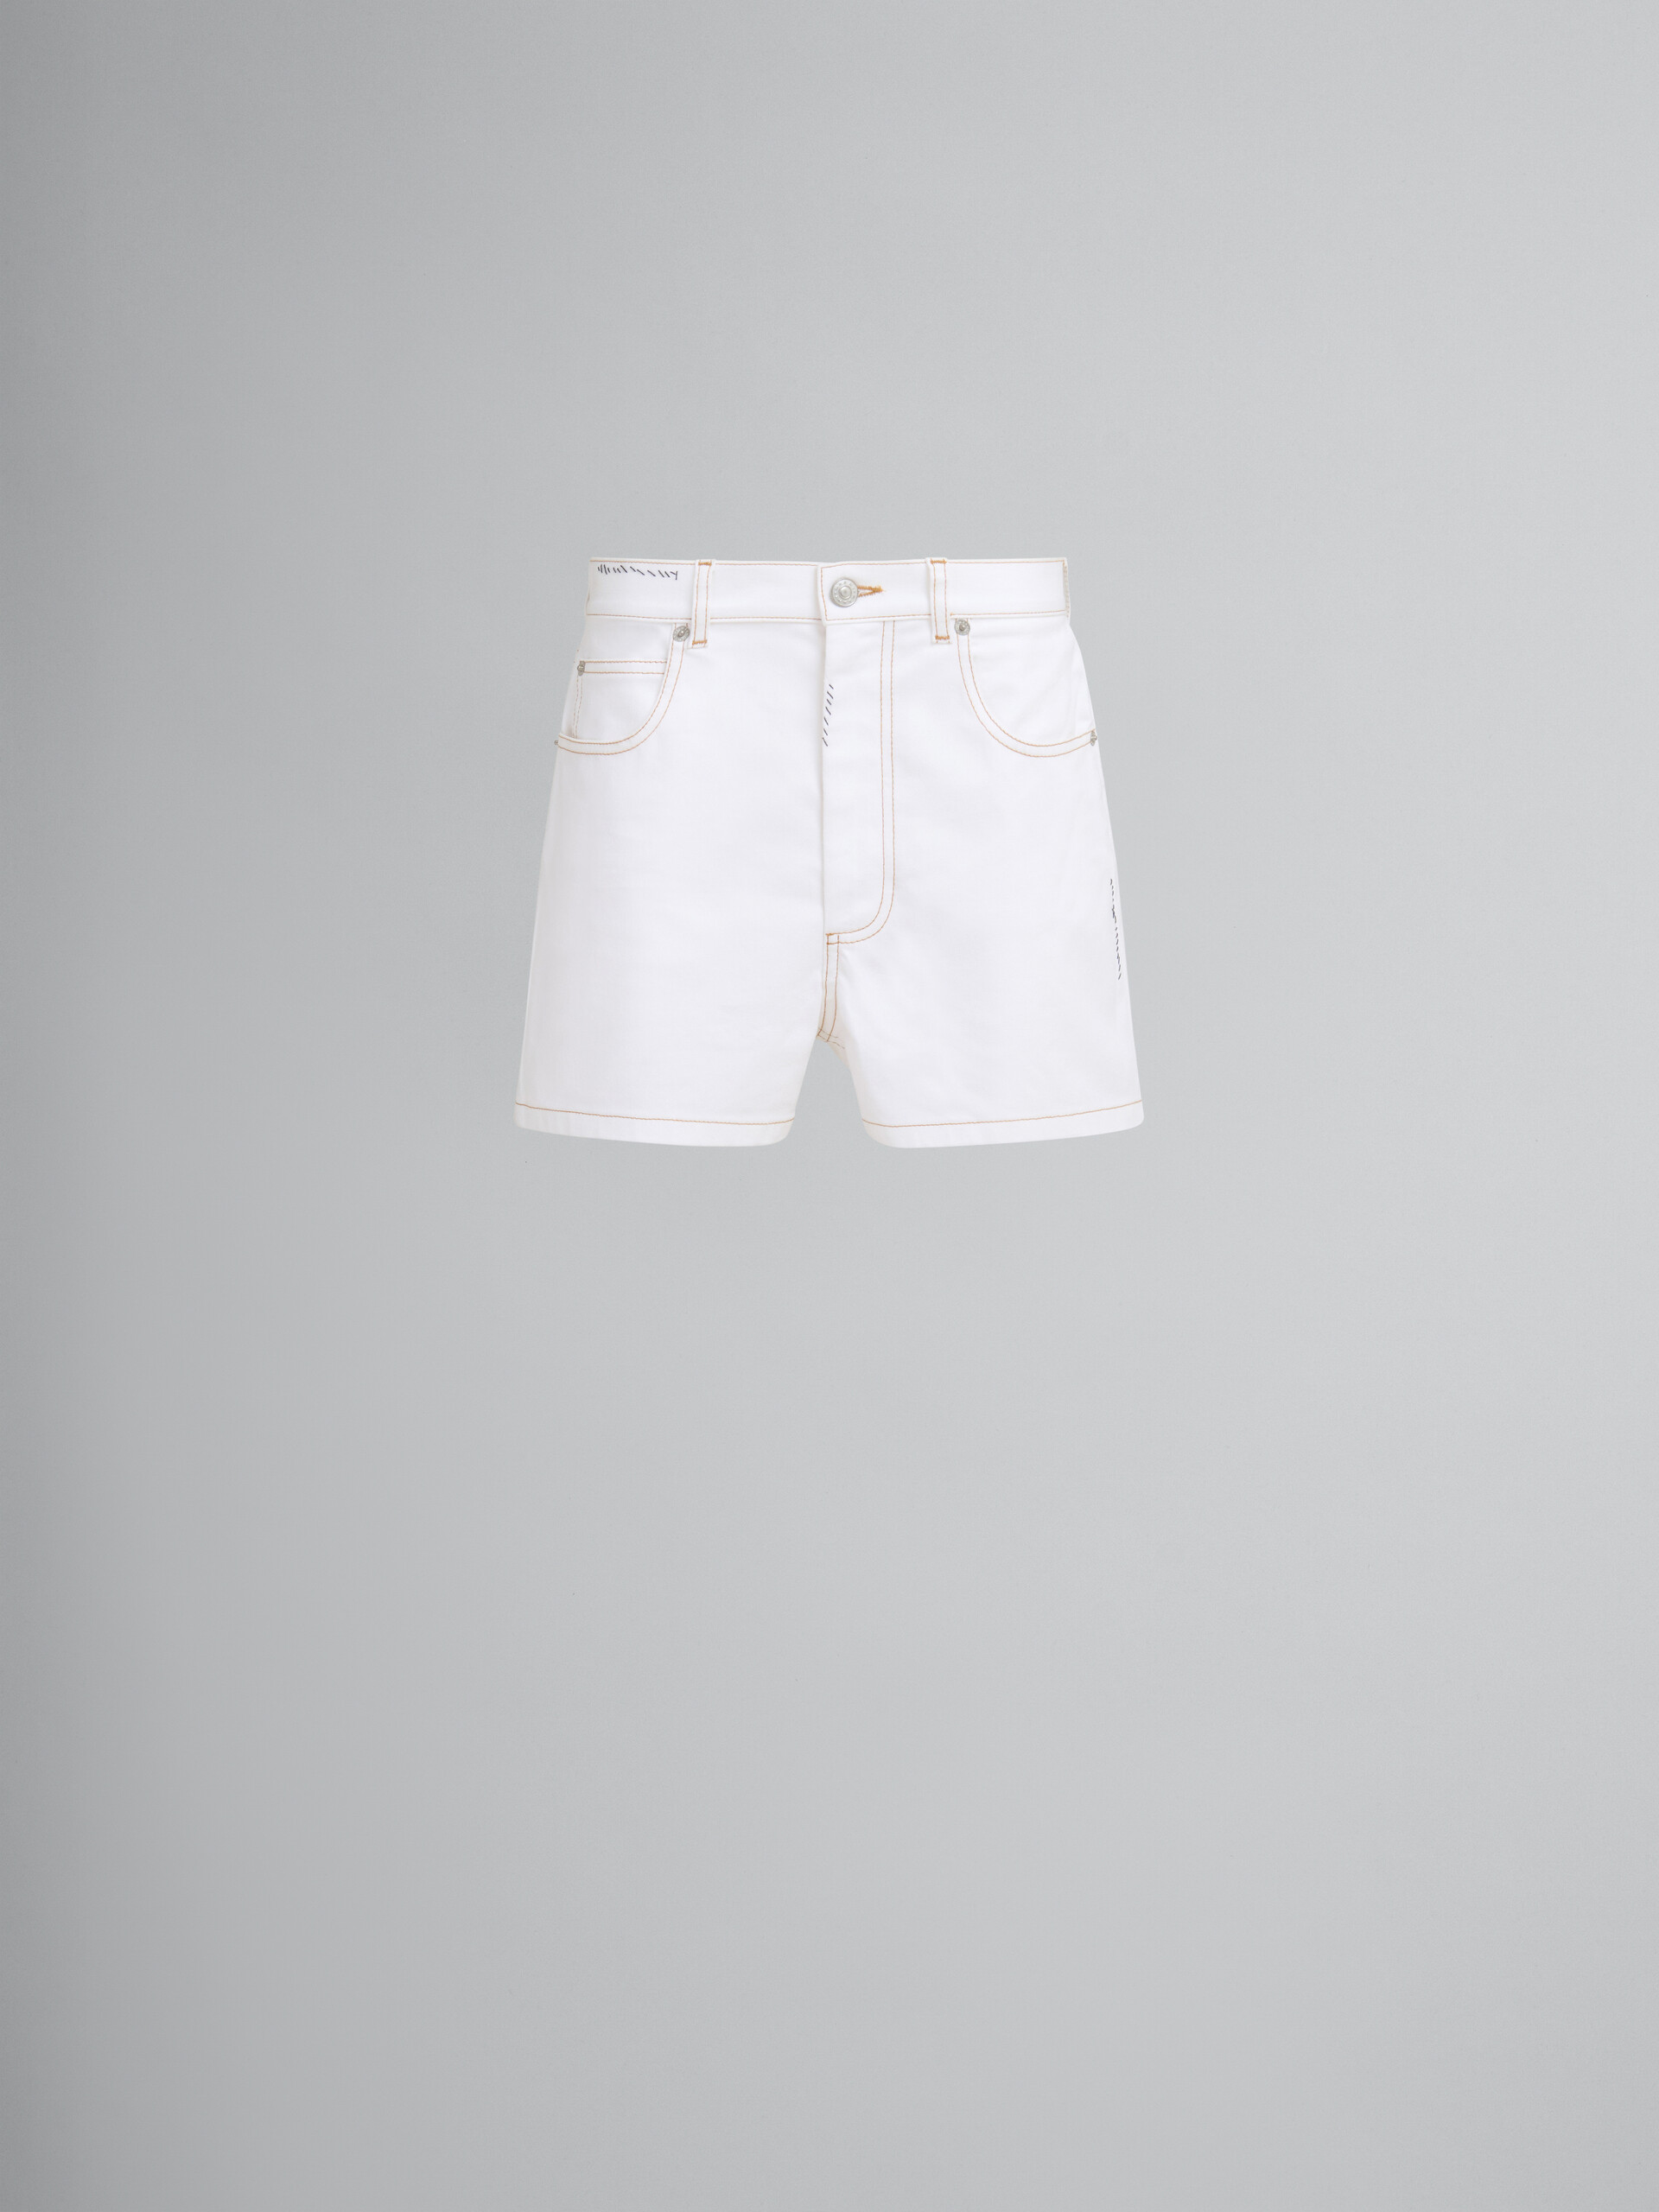 Shorts in denim bianco con applicazione a fiore - Pantaloni - Image 1